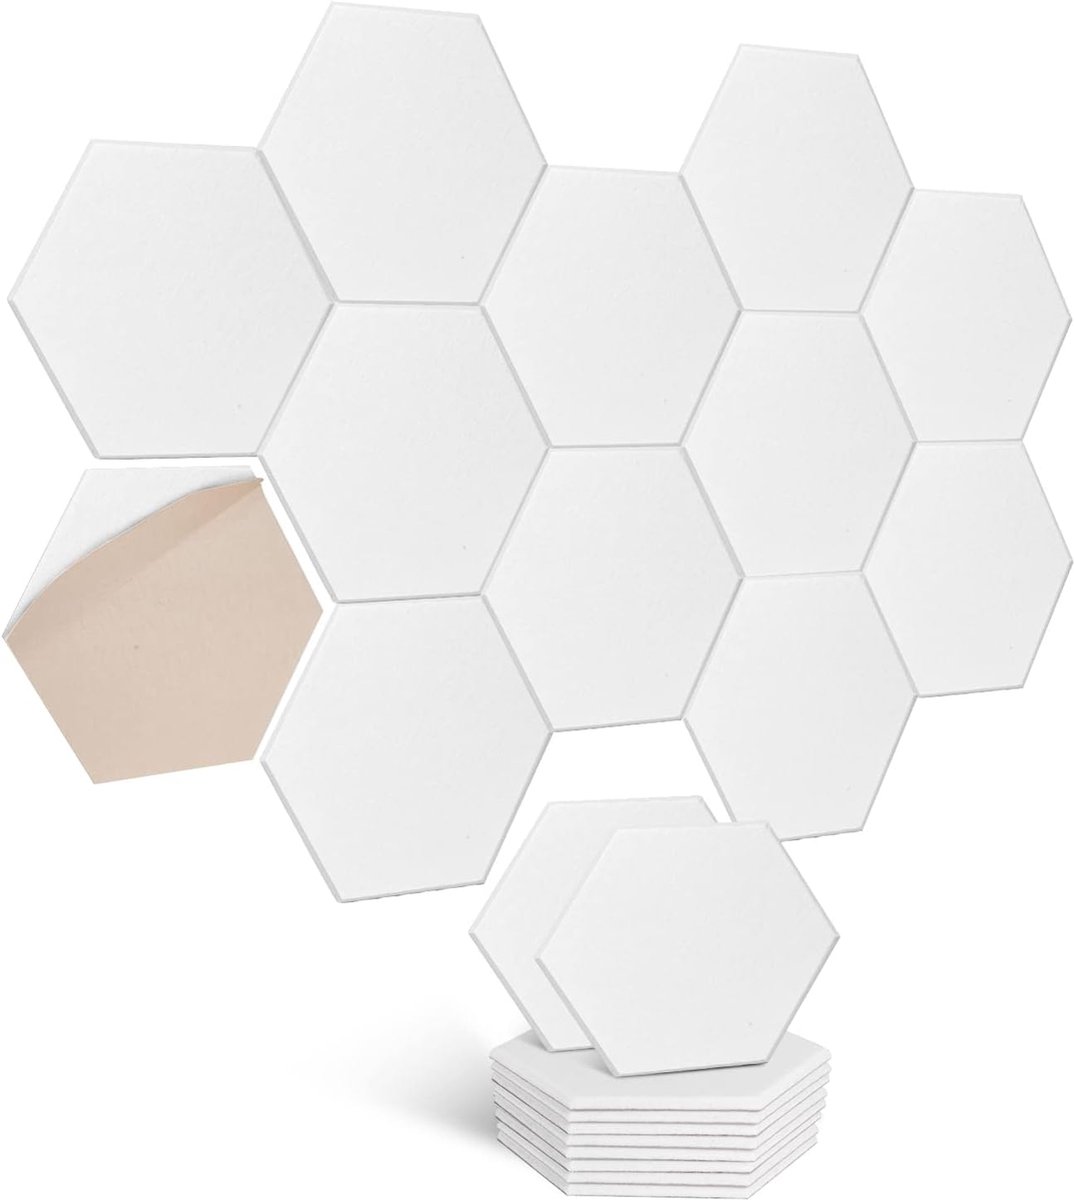 Hexagon Akoestische platen, zelfklevend, 12 stuks, geluidsabsorberende geluidsisolatie met hoge dichtheid, voor wandplafonds, hout en deuren, akoestisch paneel, geluidsisolatieplaten, akoestische plaat, 30 x 26 x 0,9 cm, licht kameel